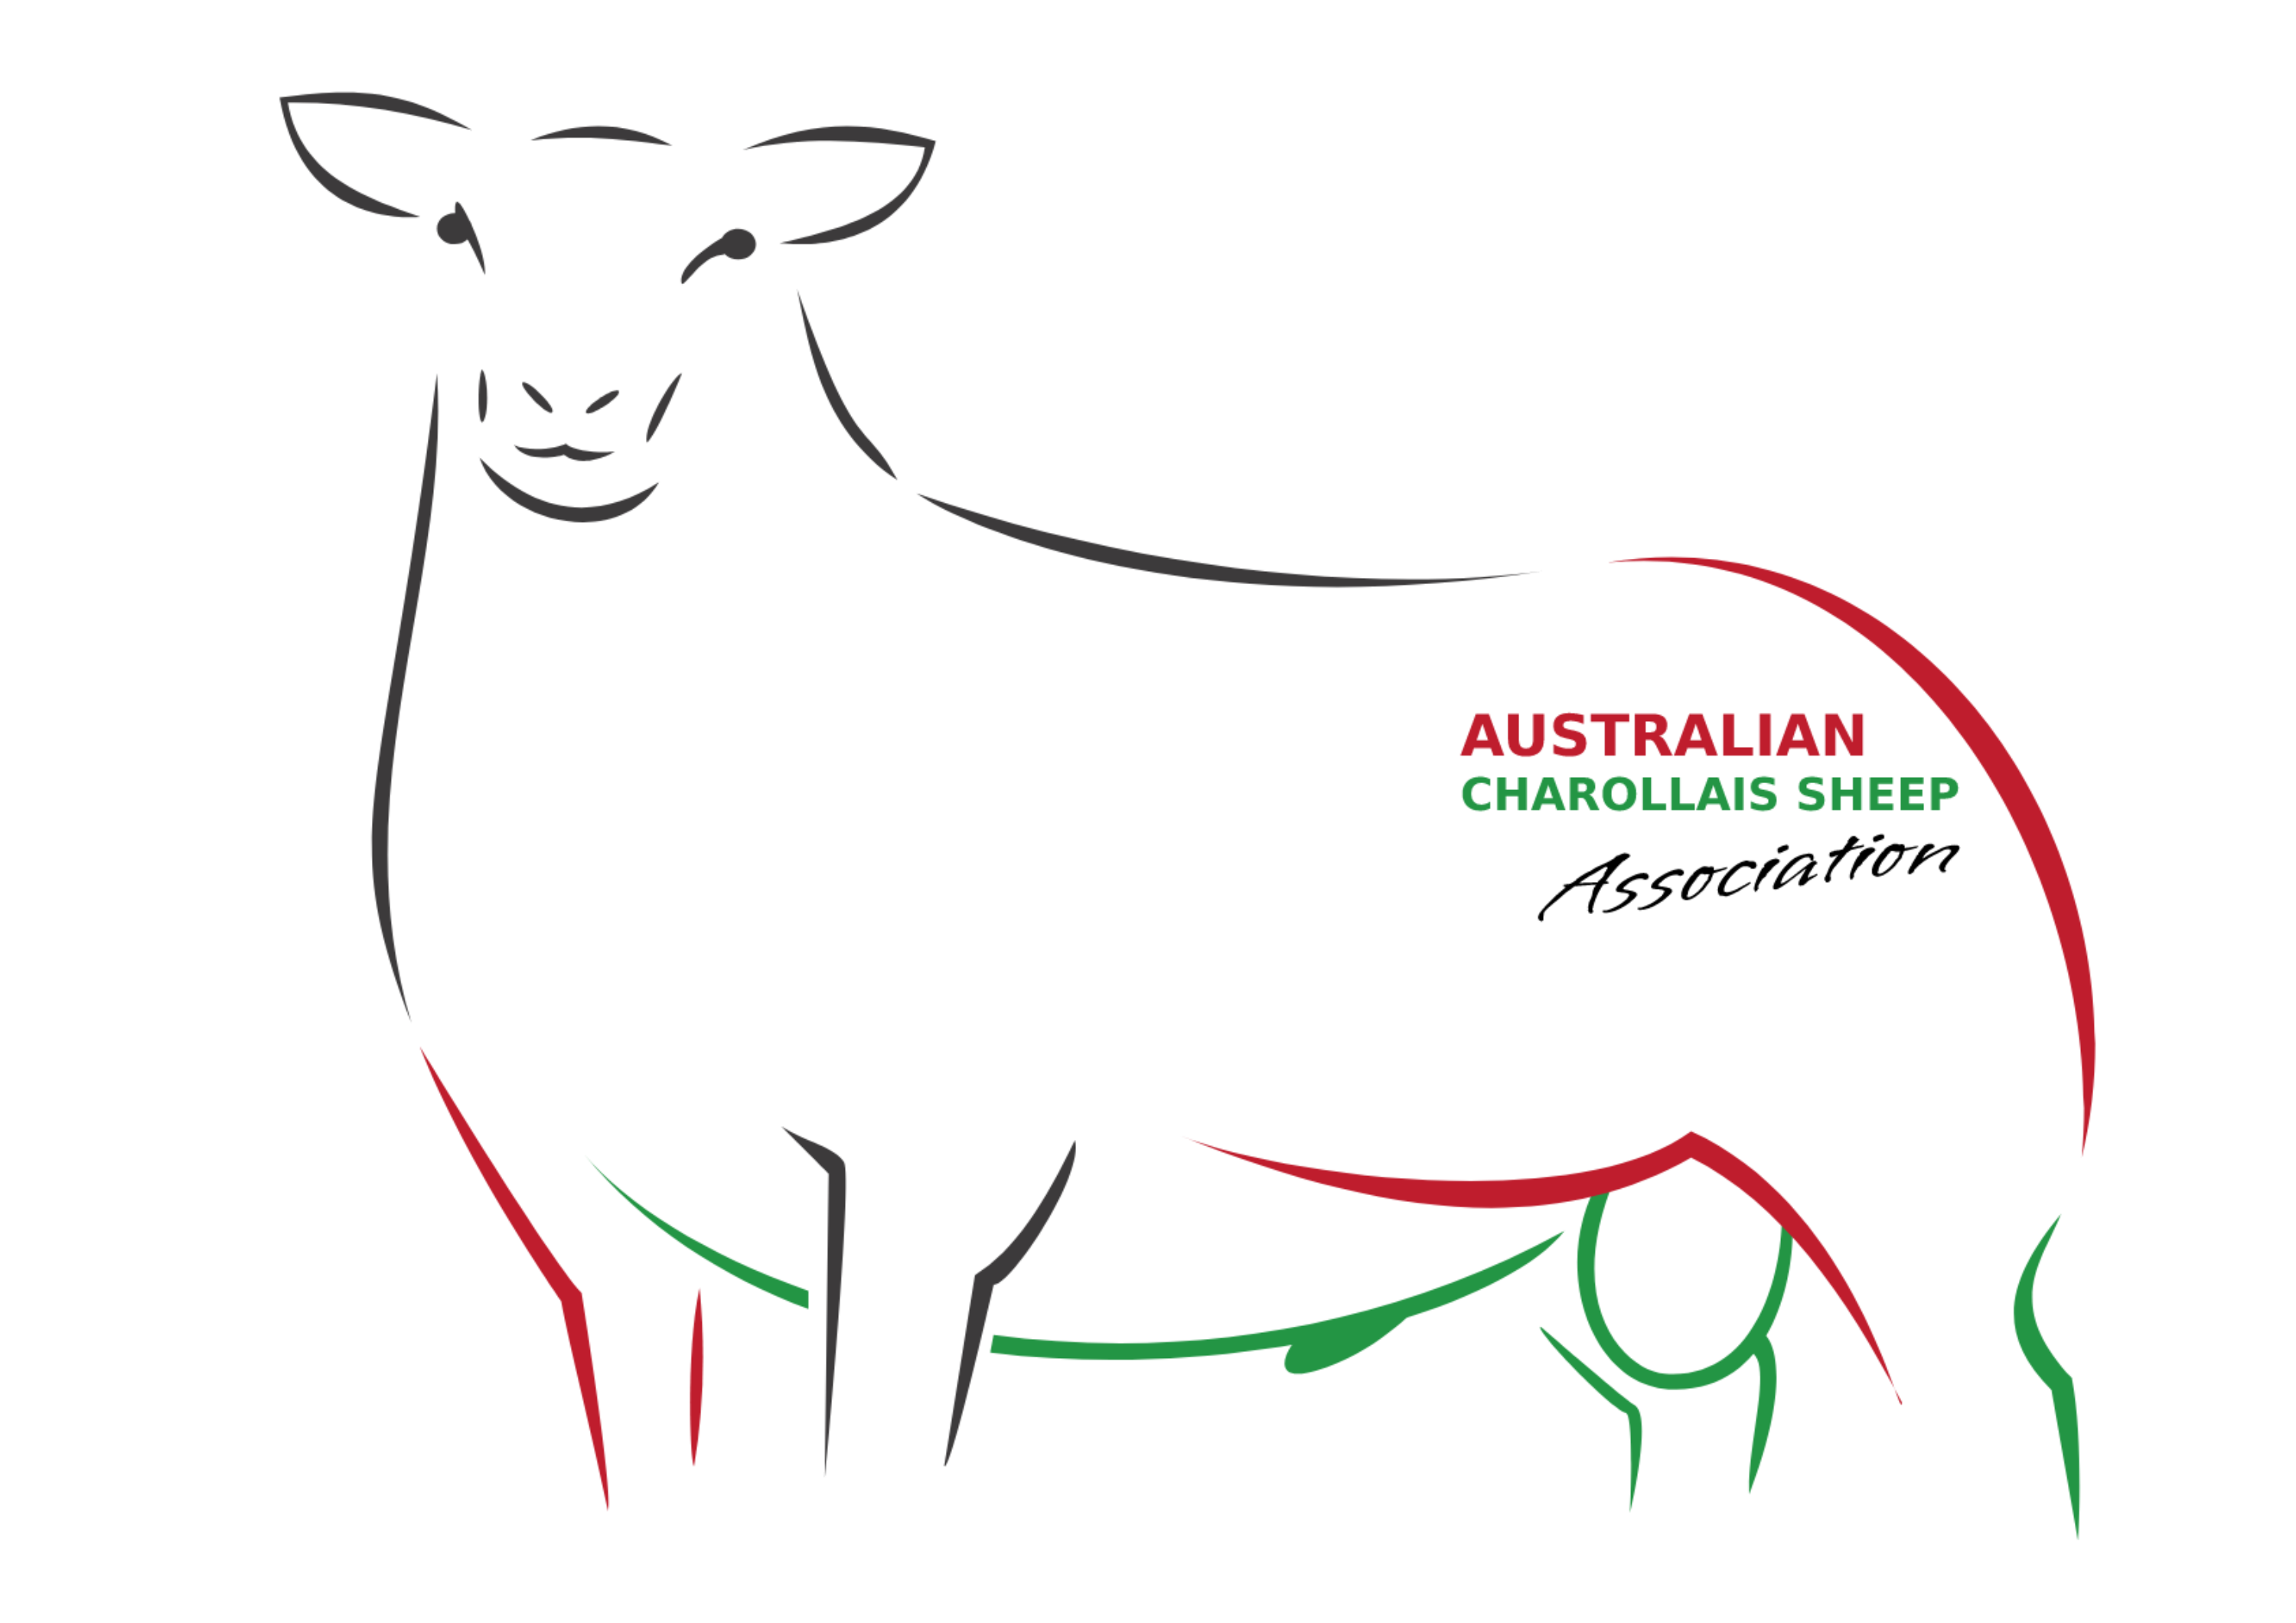 Australian Charollais Sheep Association